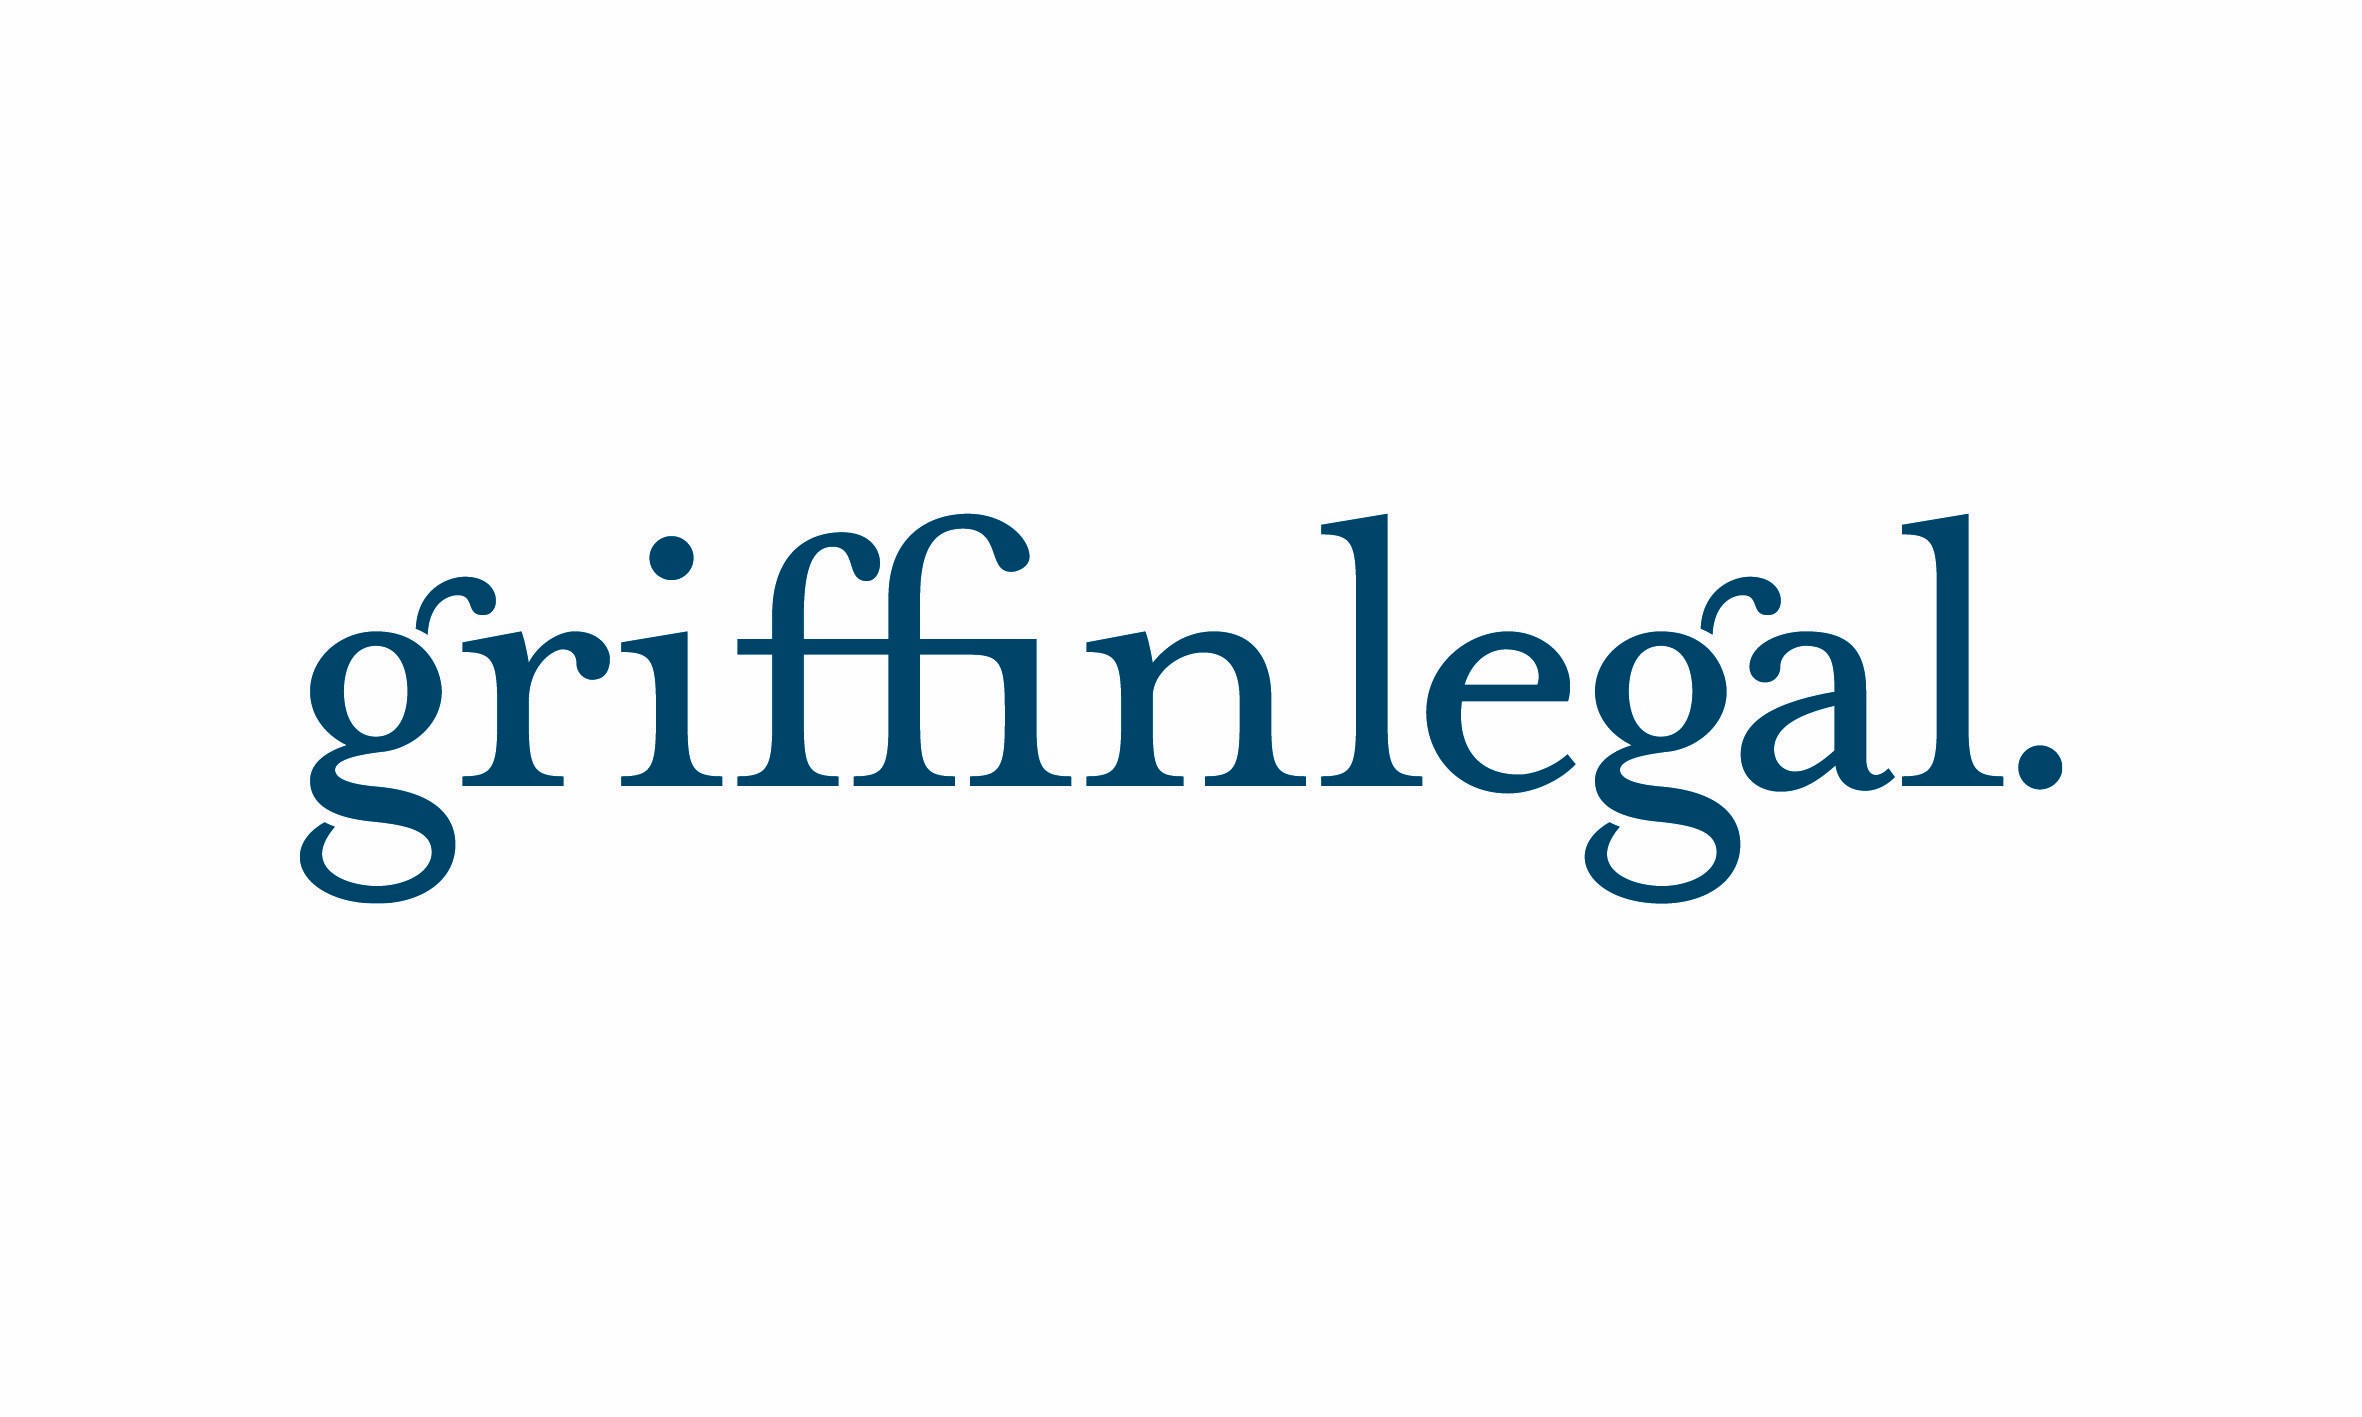 Griffin legal